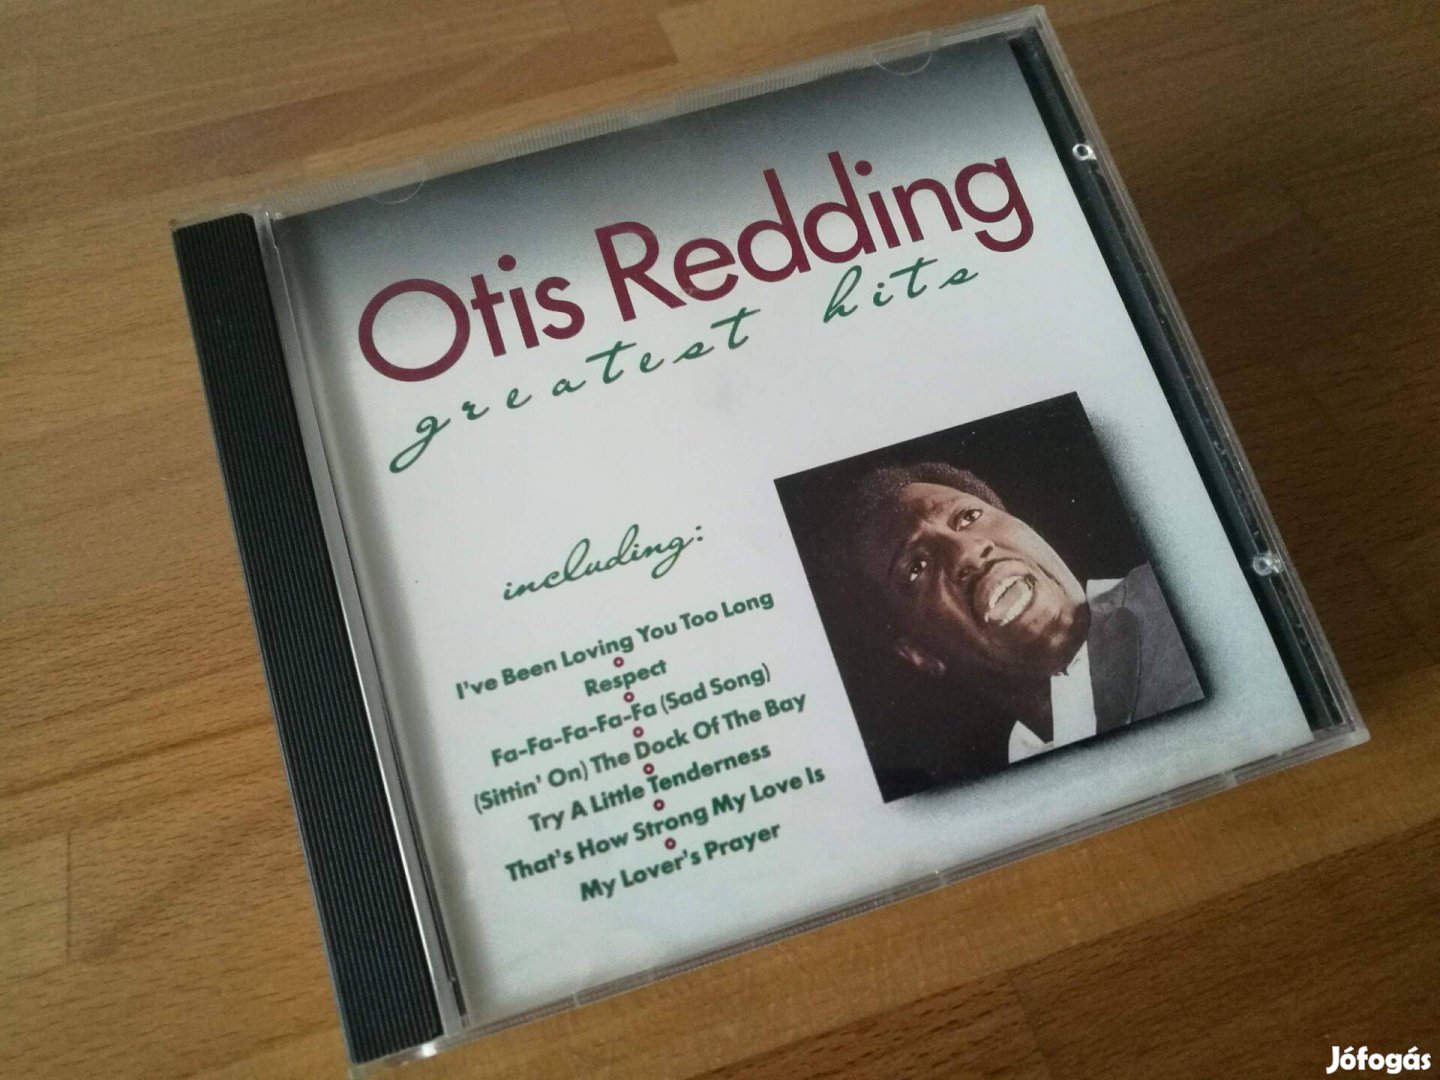 Otis Redding - Greatest hits (Duchesse, 1989, CD) R&B/Soul